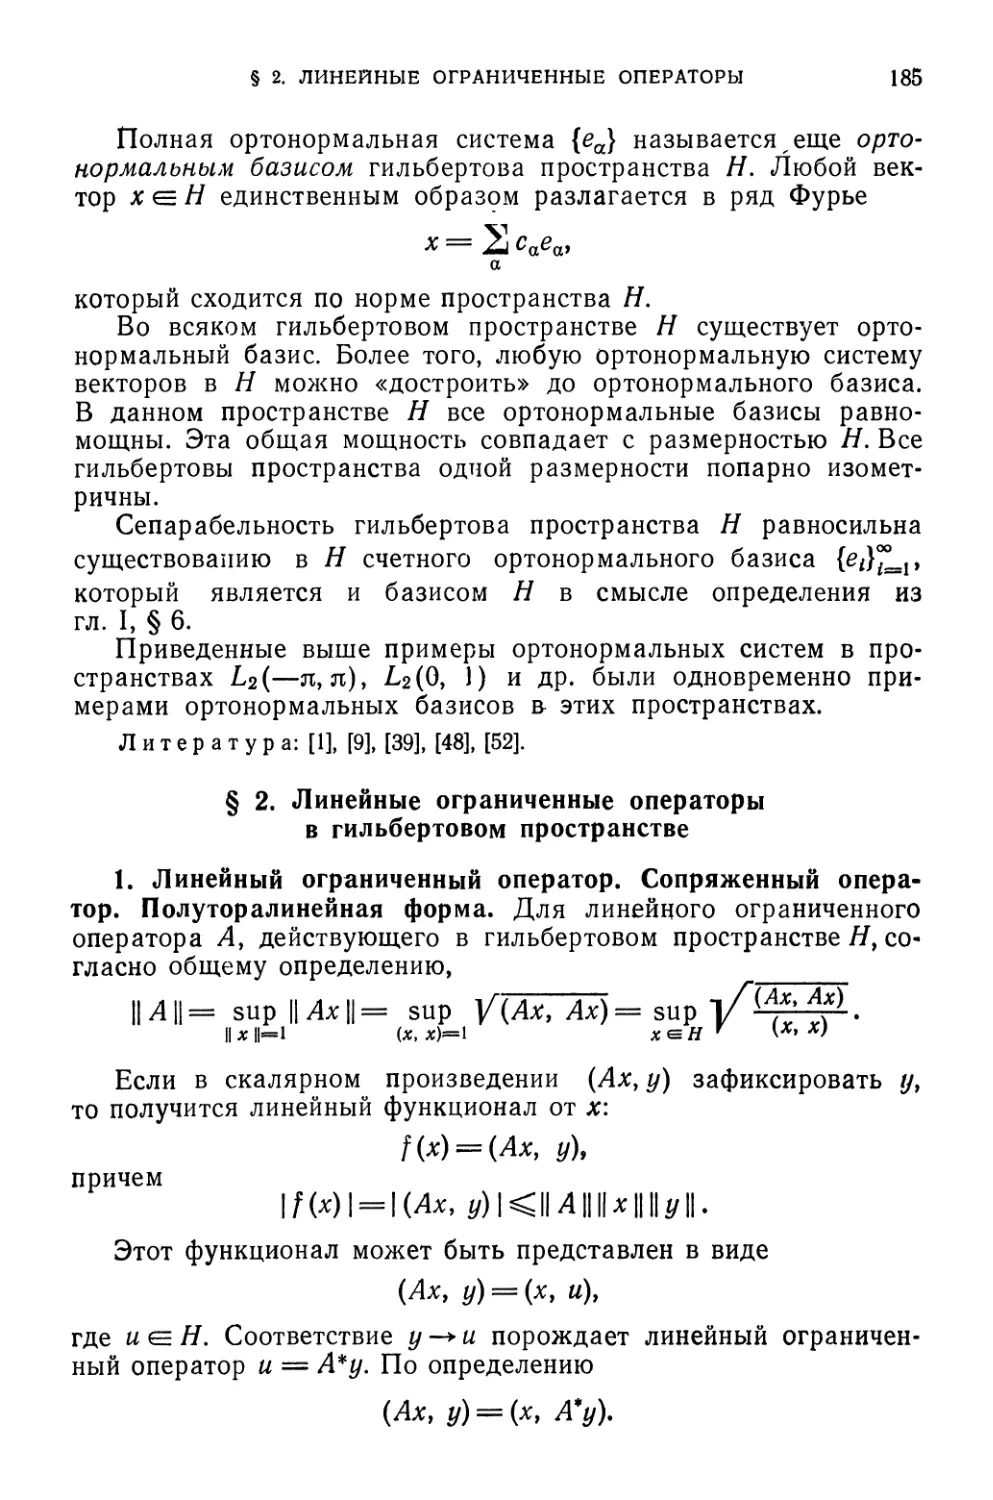 § 2. Линейные ограниченные операторы в гильбертовом пространстве